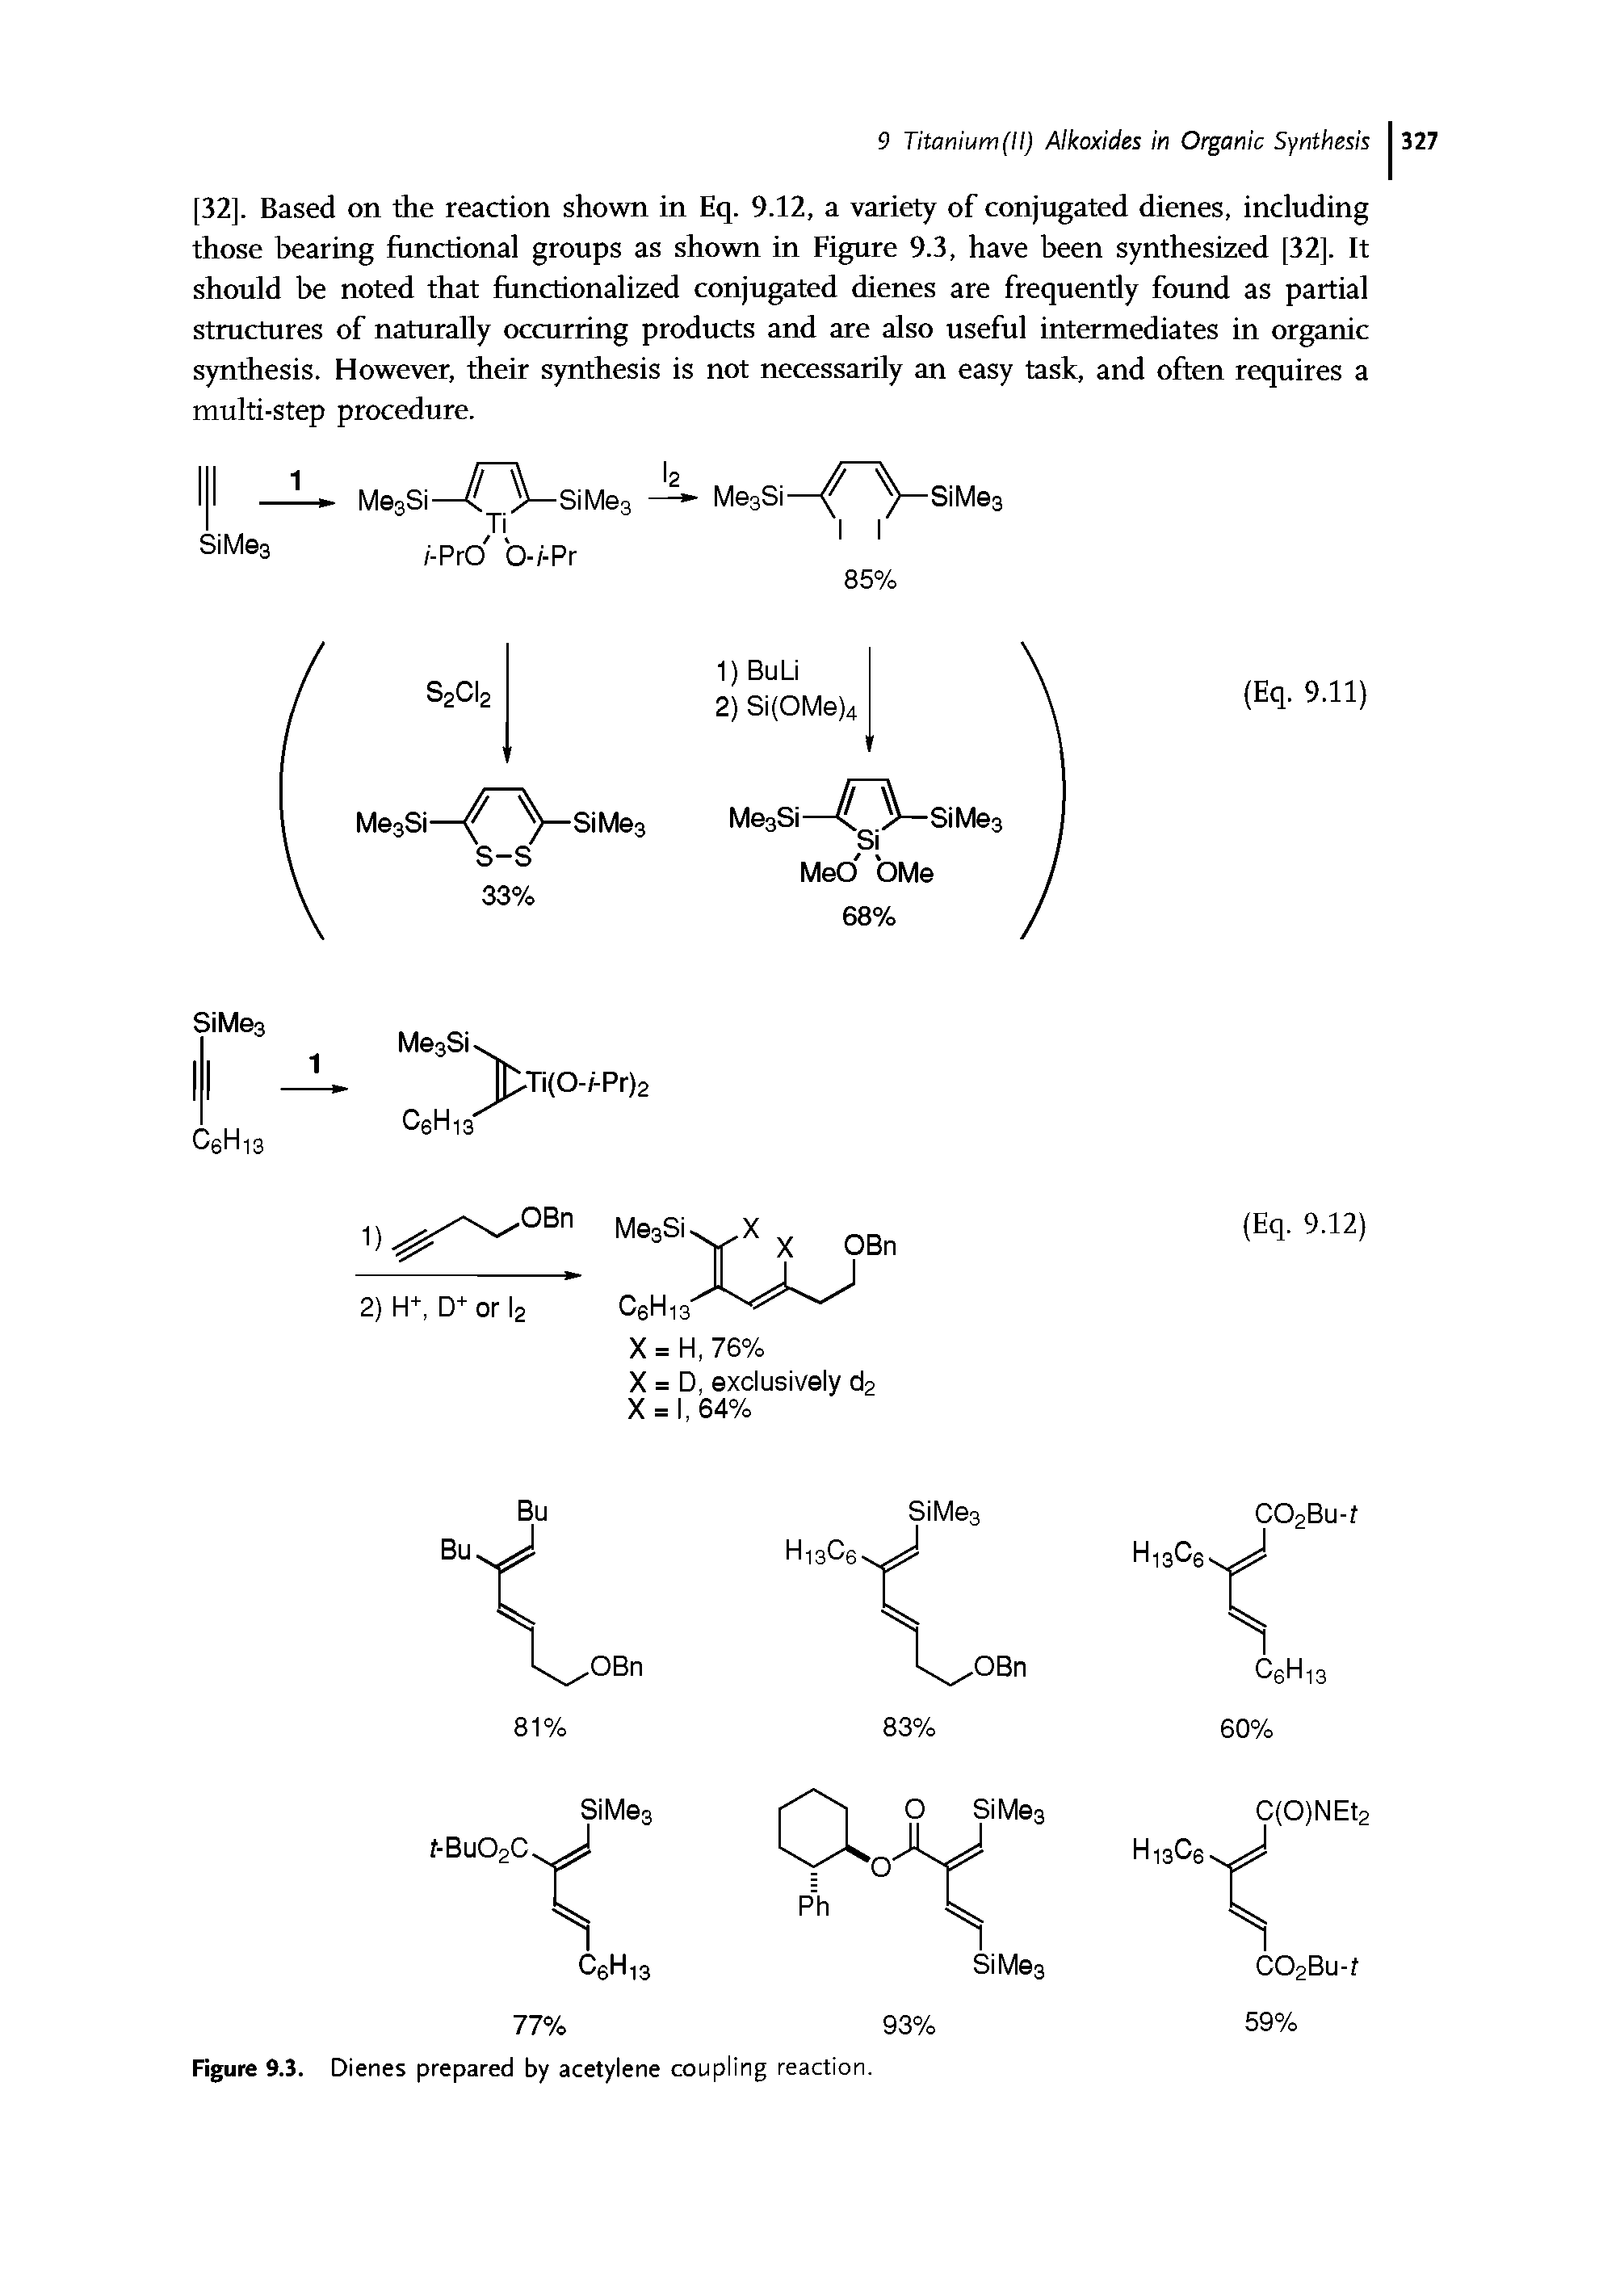 Figure 9.3. Dienes prepared by acetylene coupling reaction.